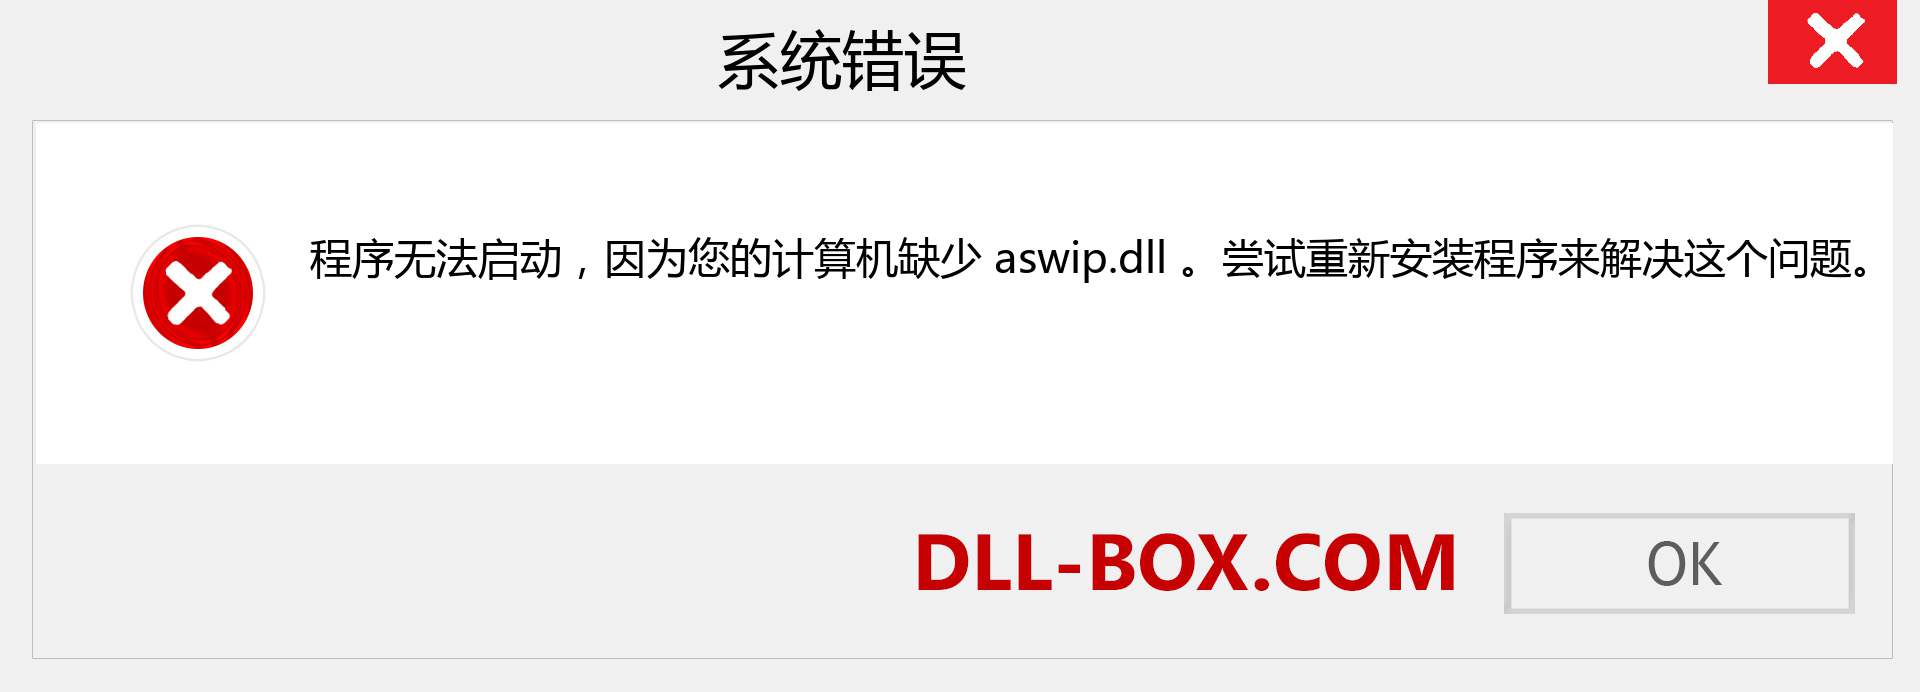 aswip.dll 文件丢失？。 适用于 Windows 7、8、10 的下载 - 修复 Windows、照片、图像上的 aswip dll 丢失错误